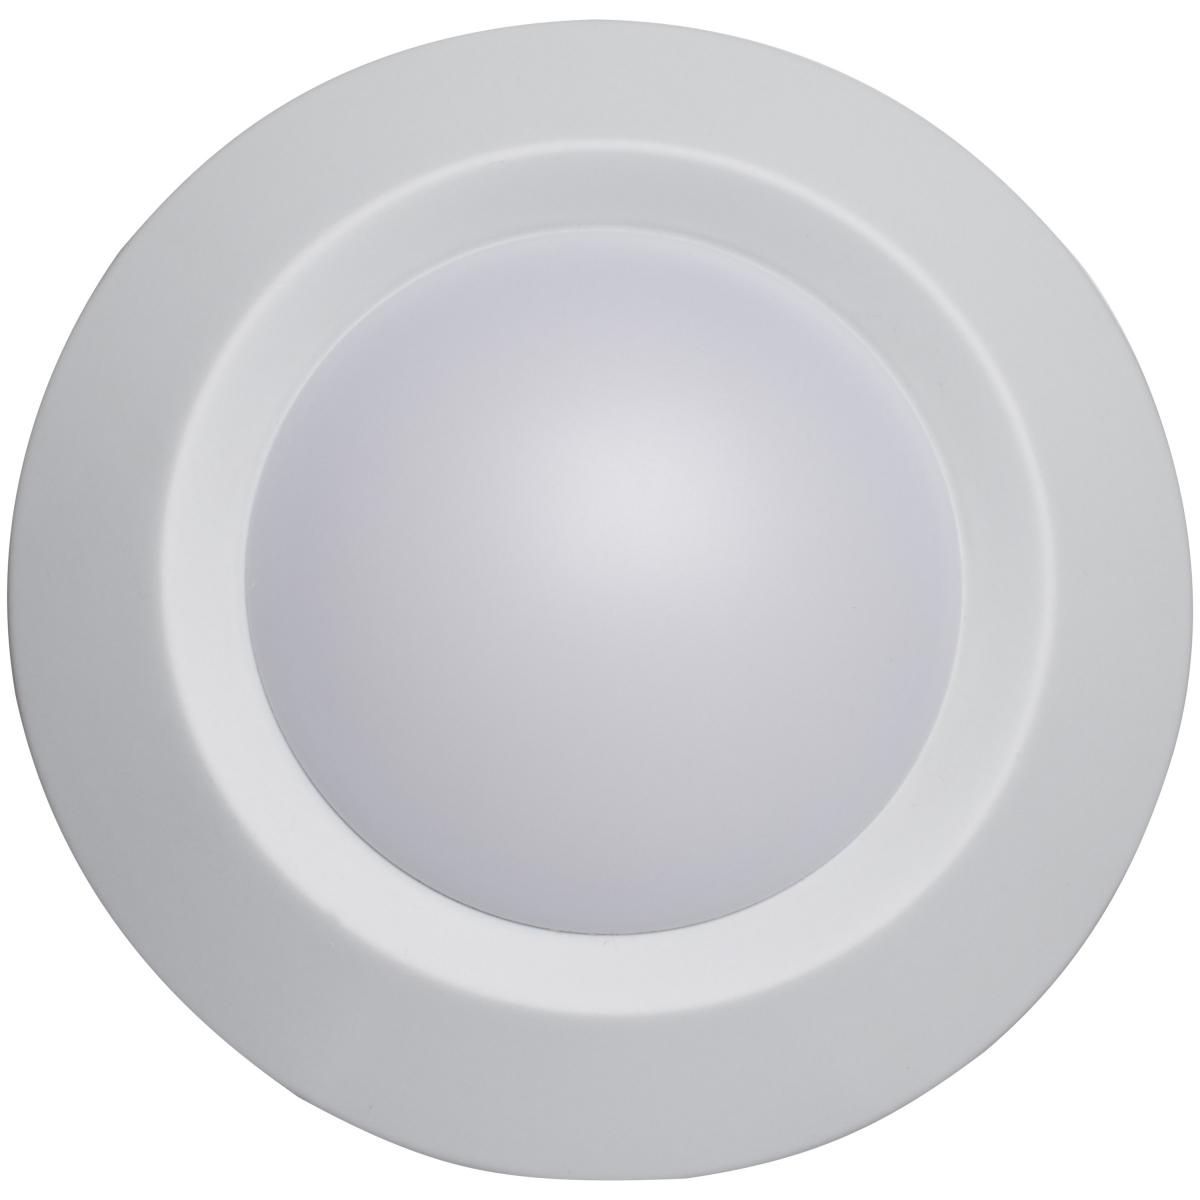 LED Round Disk Light 650 Lumens 3000K White Finish Pack of 24